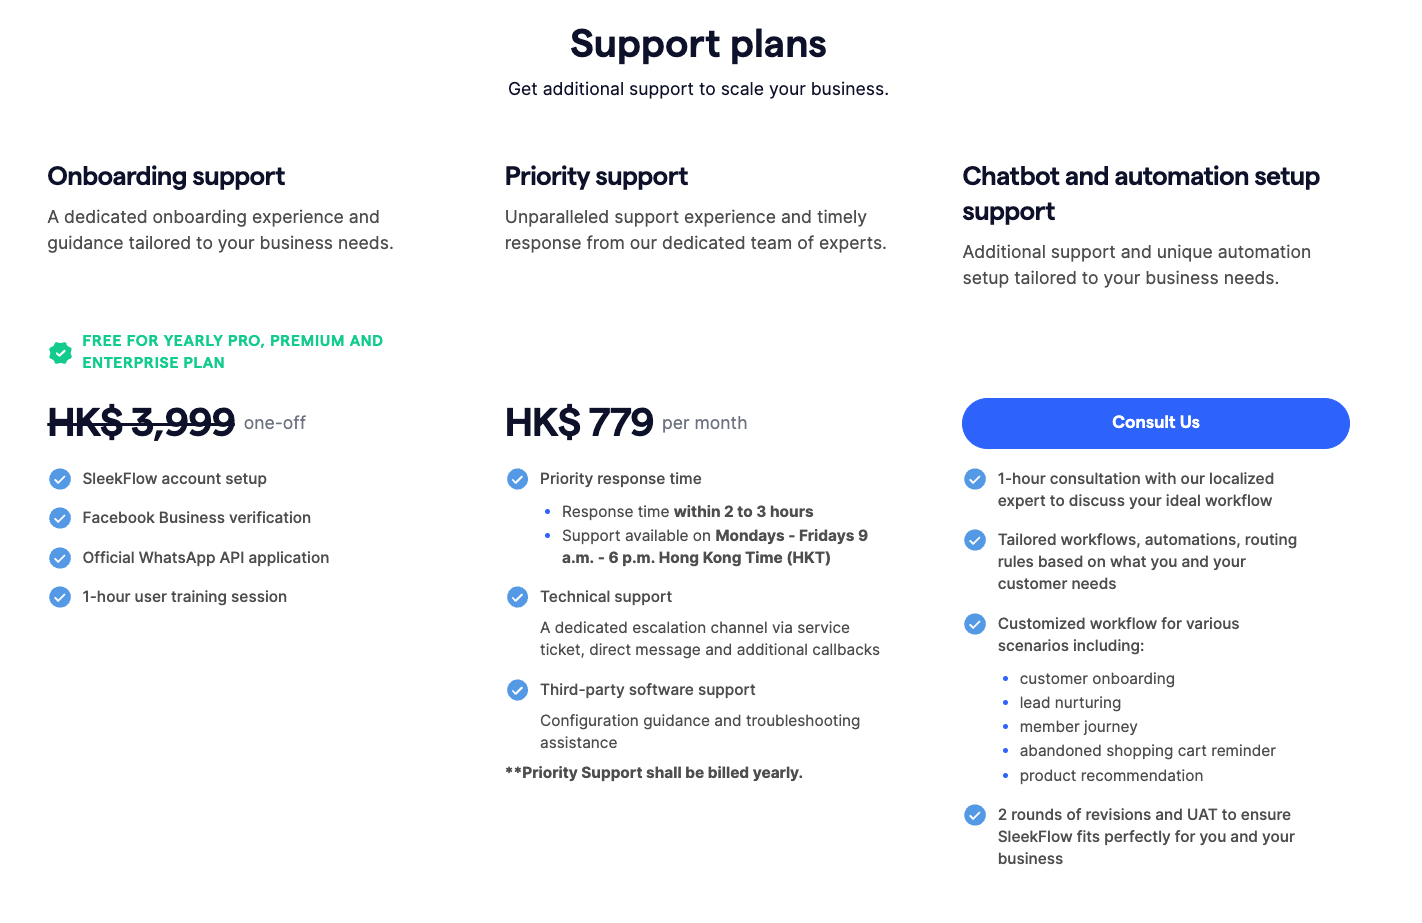 SleekFlow is Messagebird's best alternative support plan